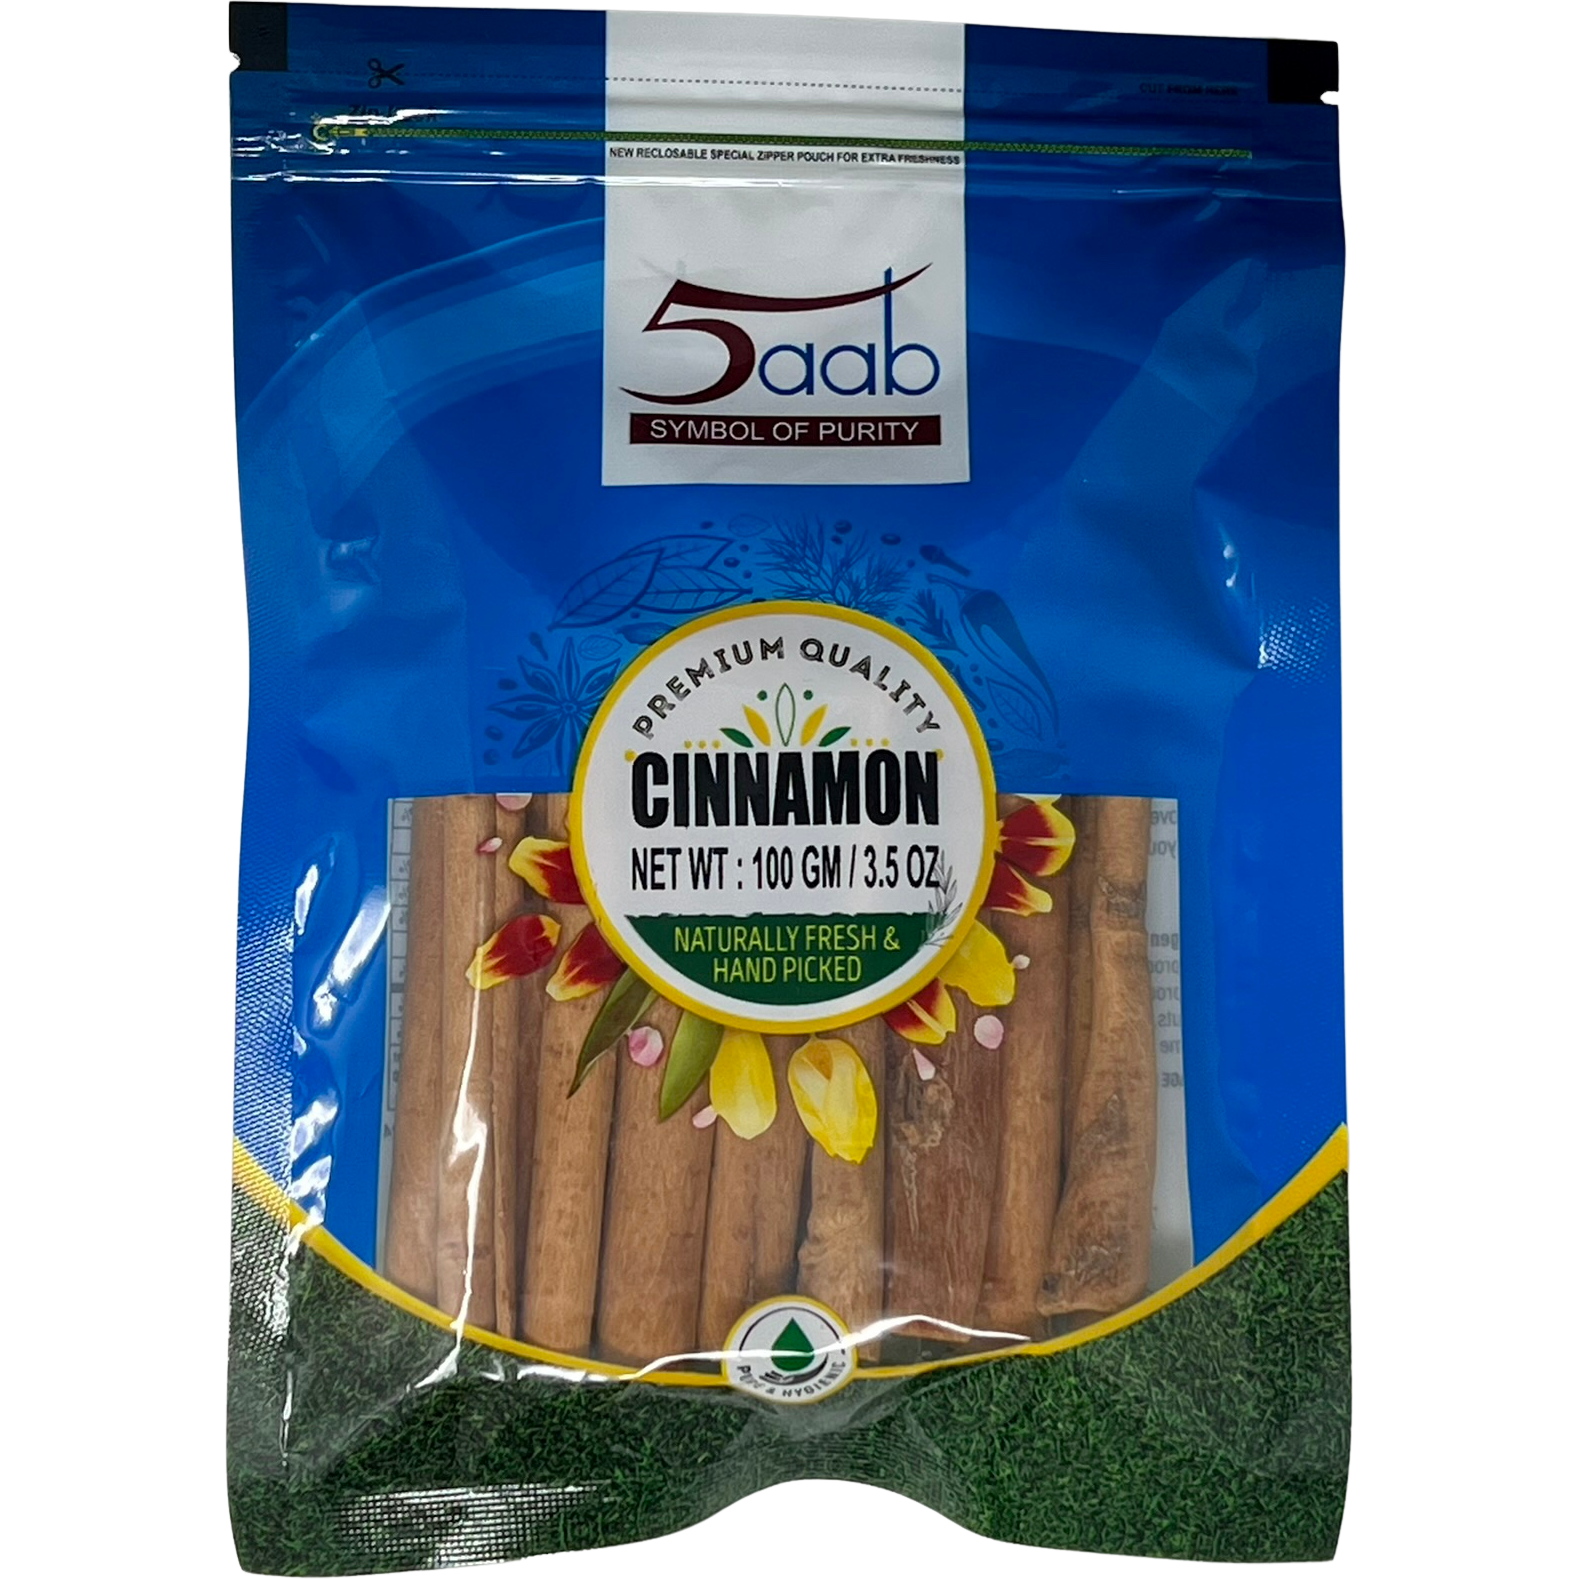 5aab Cinnamon - 100 Gm (3.5 Oz)